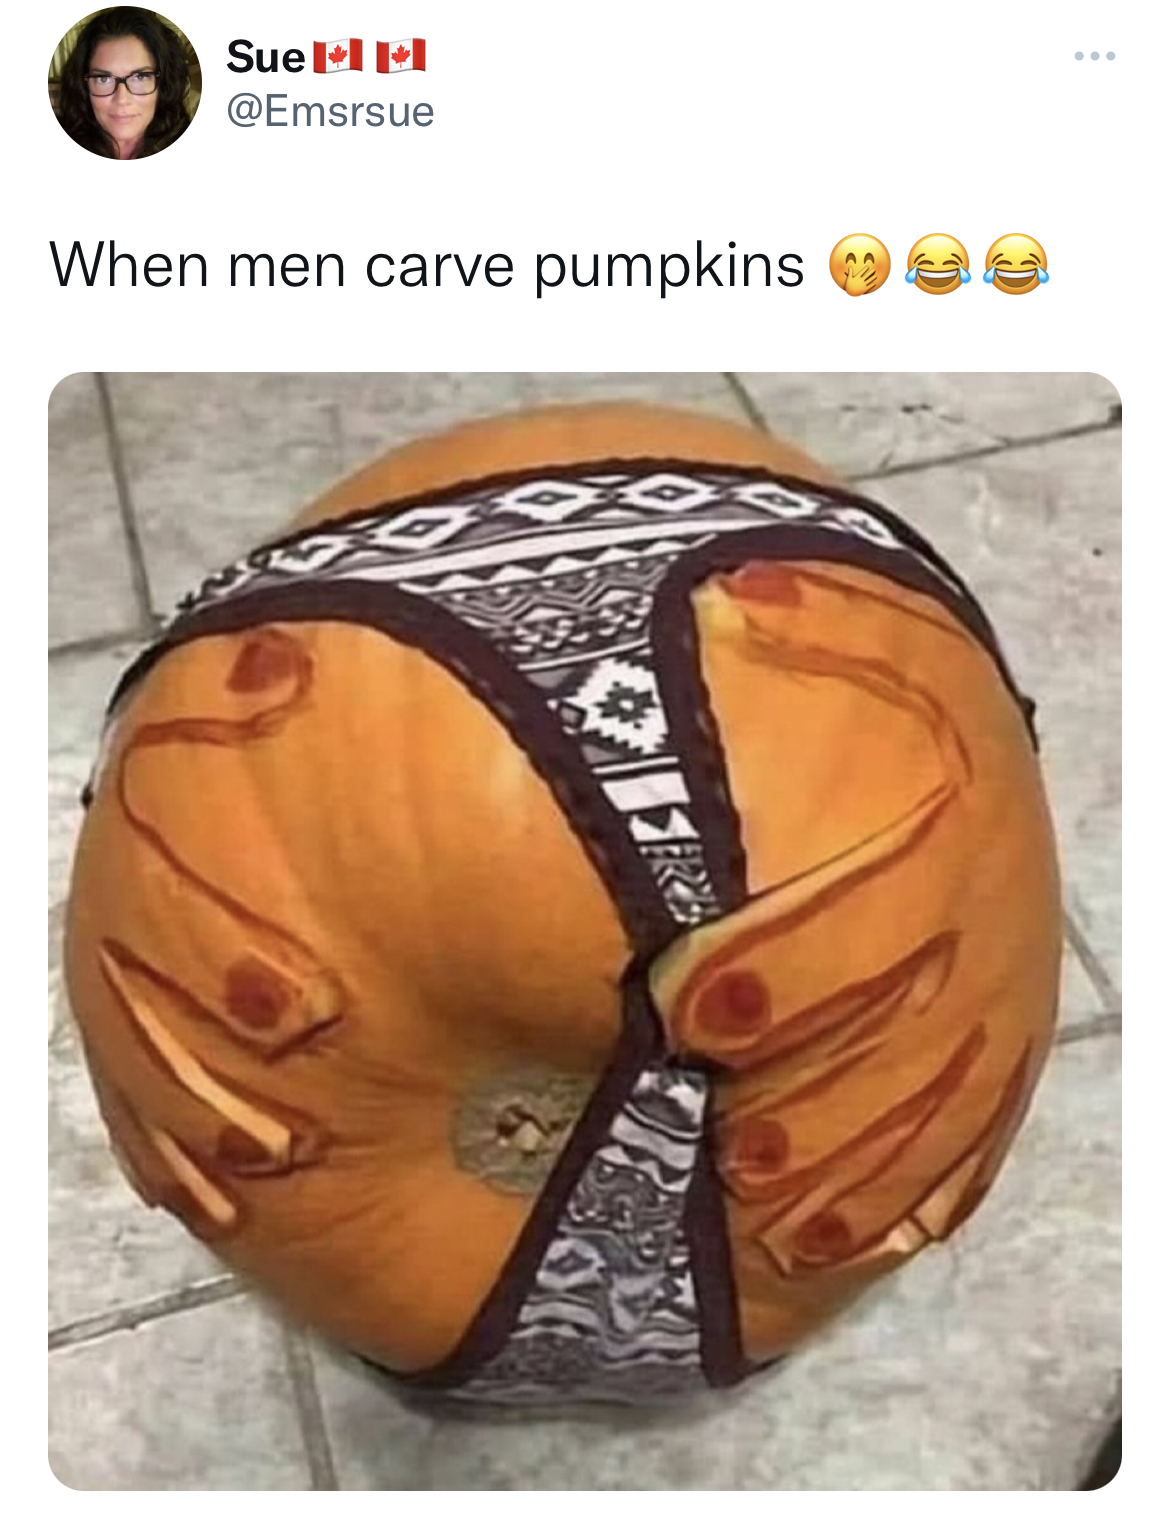 Savage and funny tweets - pumpkin - Suel When men carve pumpkins O